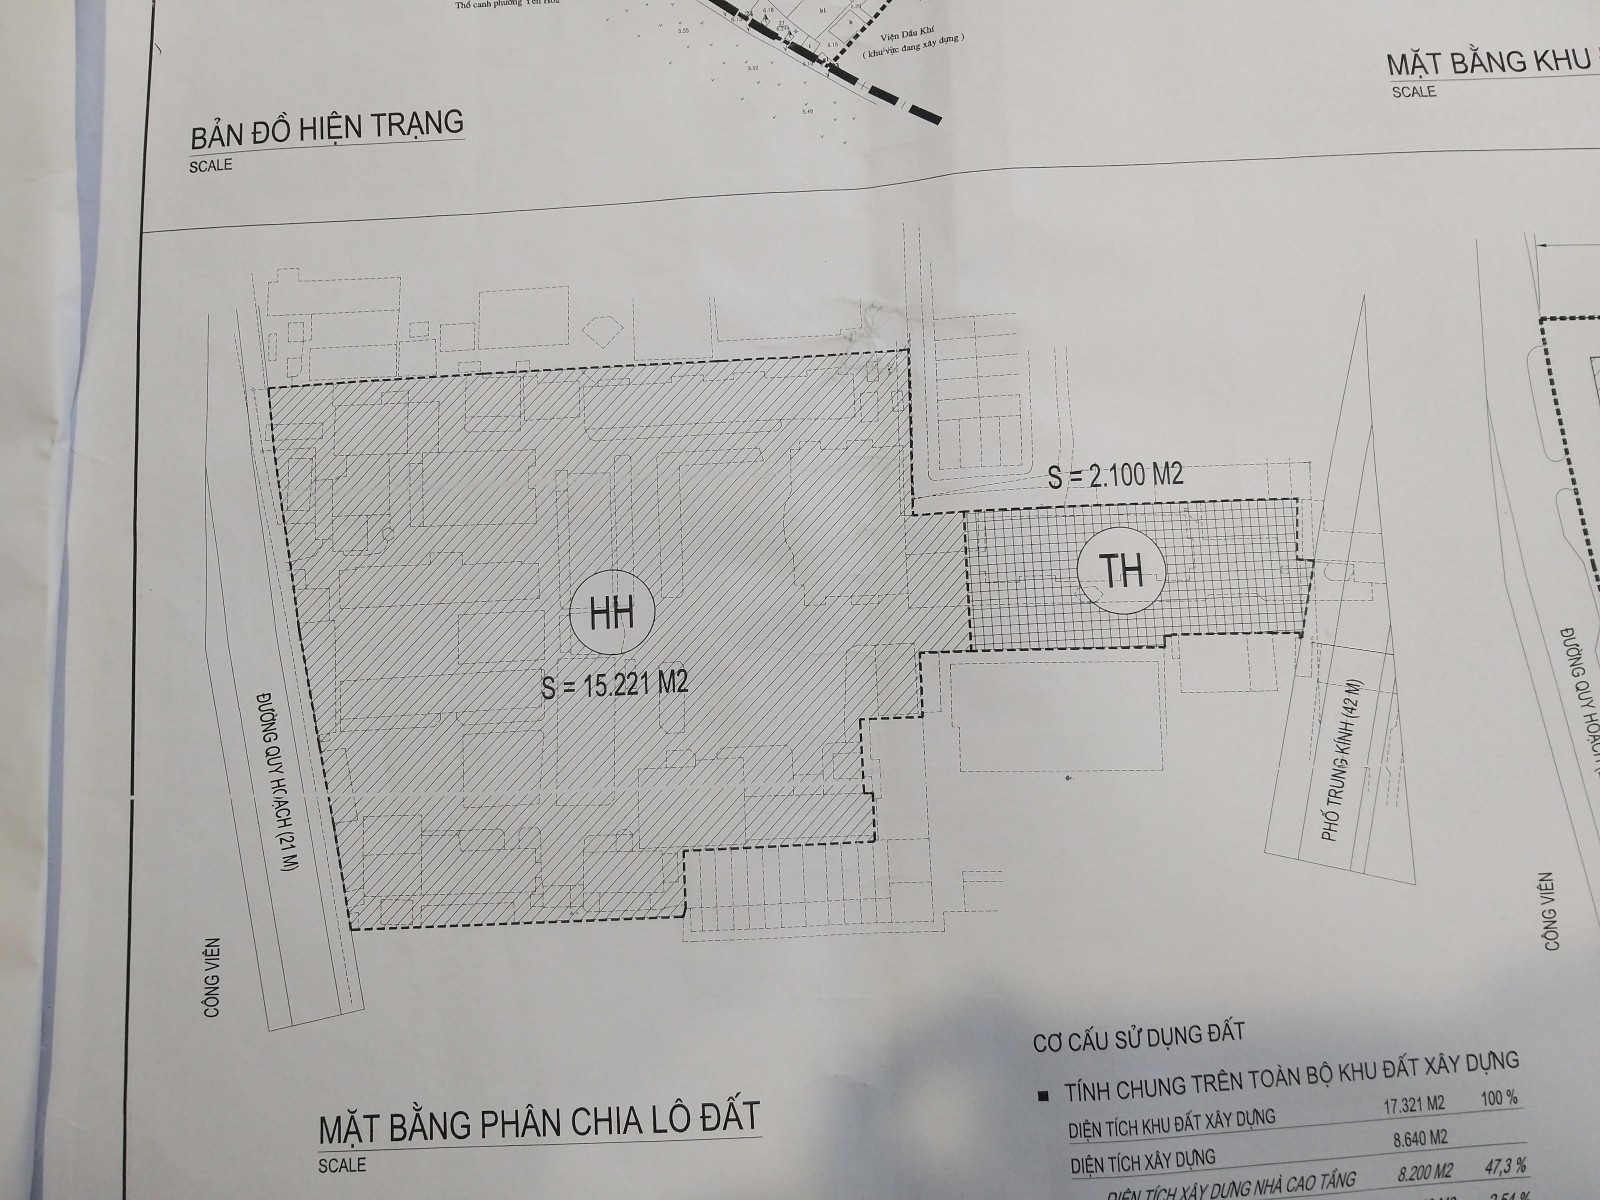 Quy hoạch của khu tổ hợp đã được UBND TP Hà Nội phê duyệt.